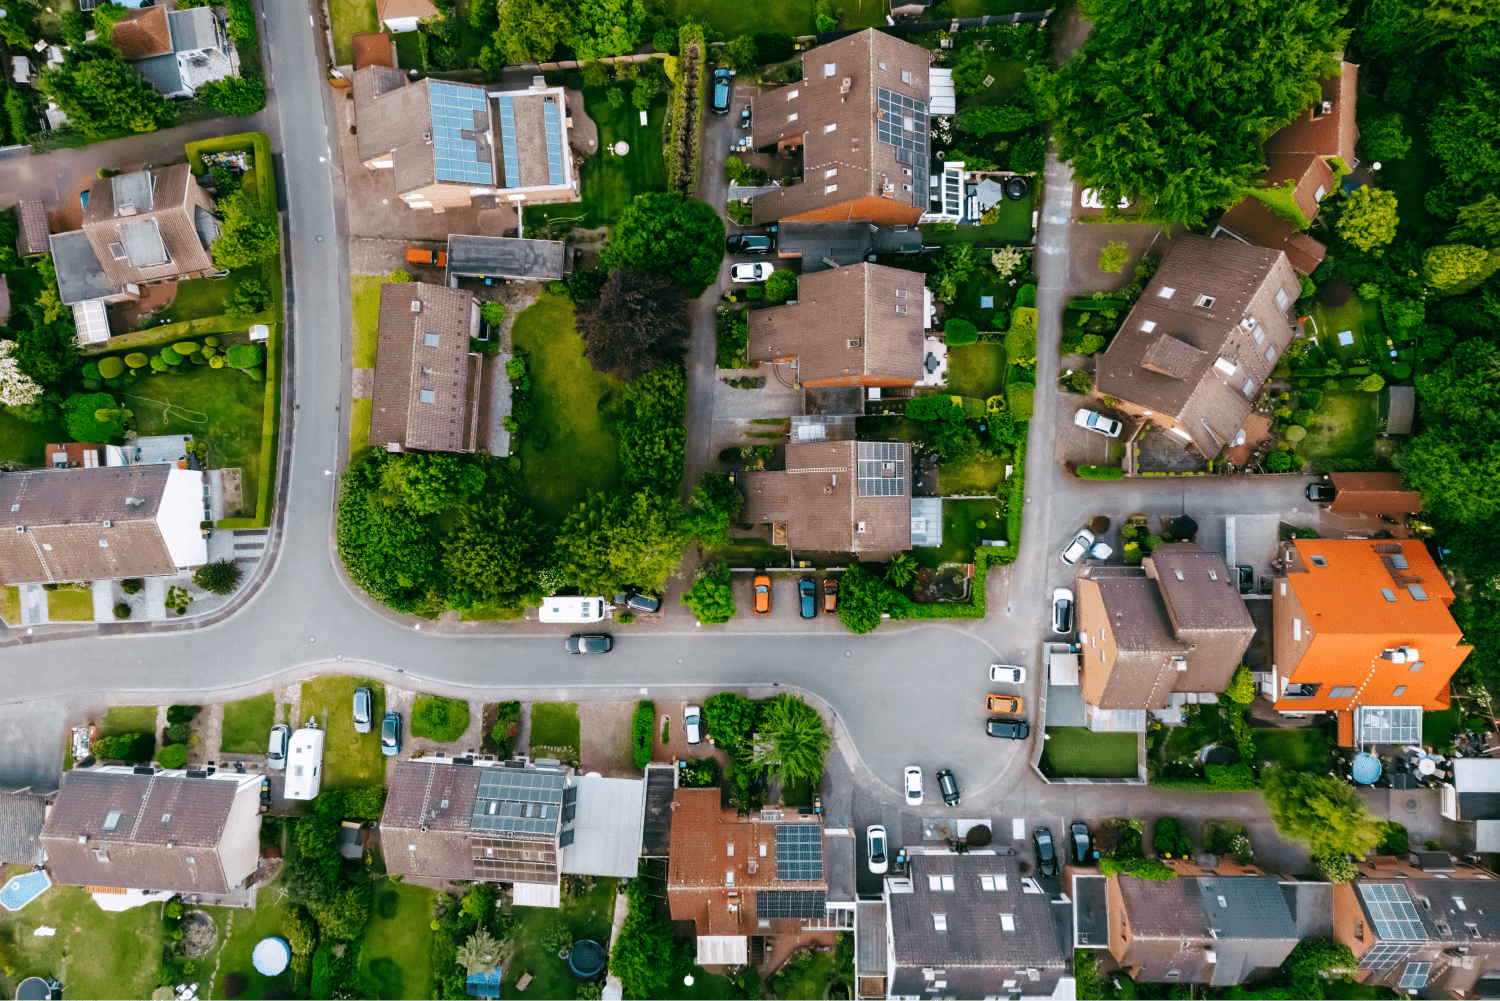 Luftbildaufnahme eines Dorfes mit vielen Solaranlagen